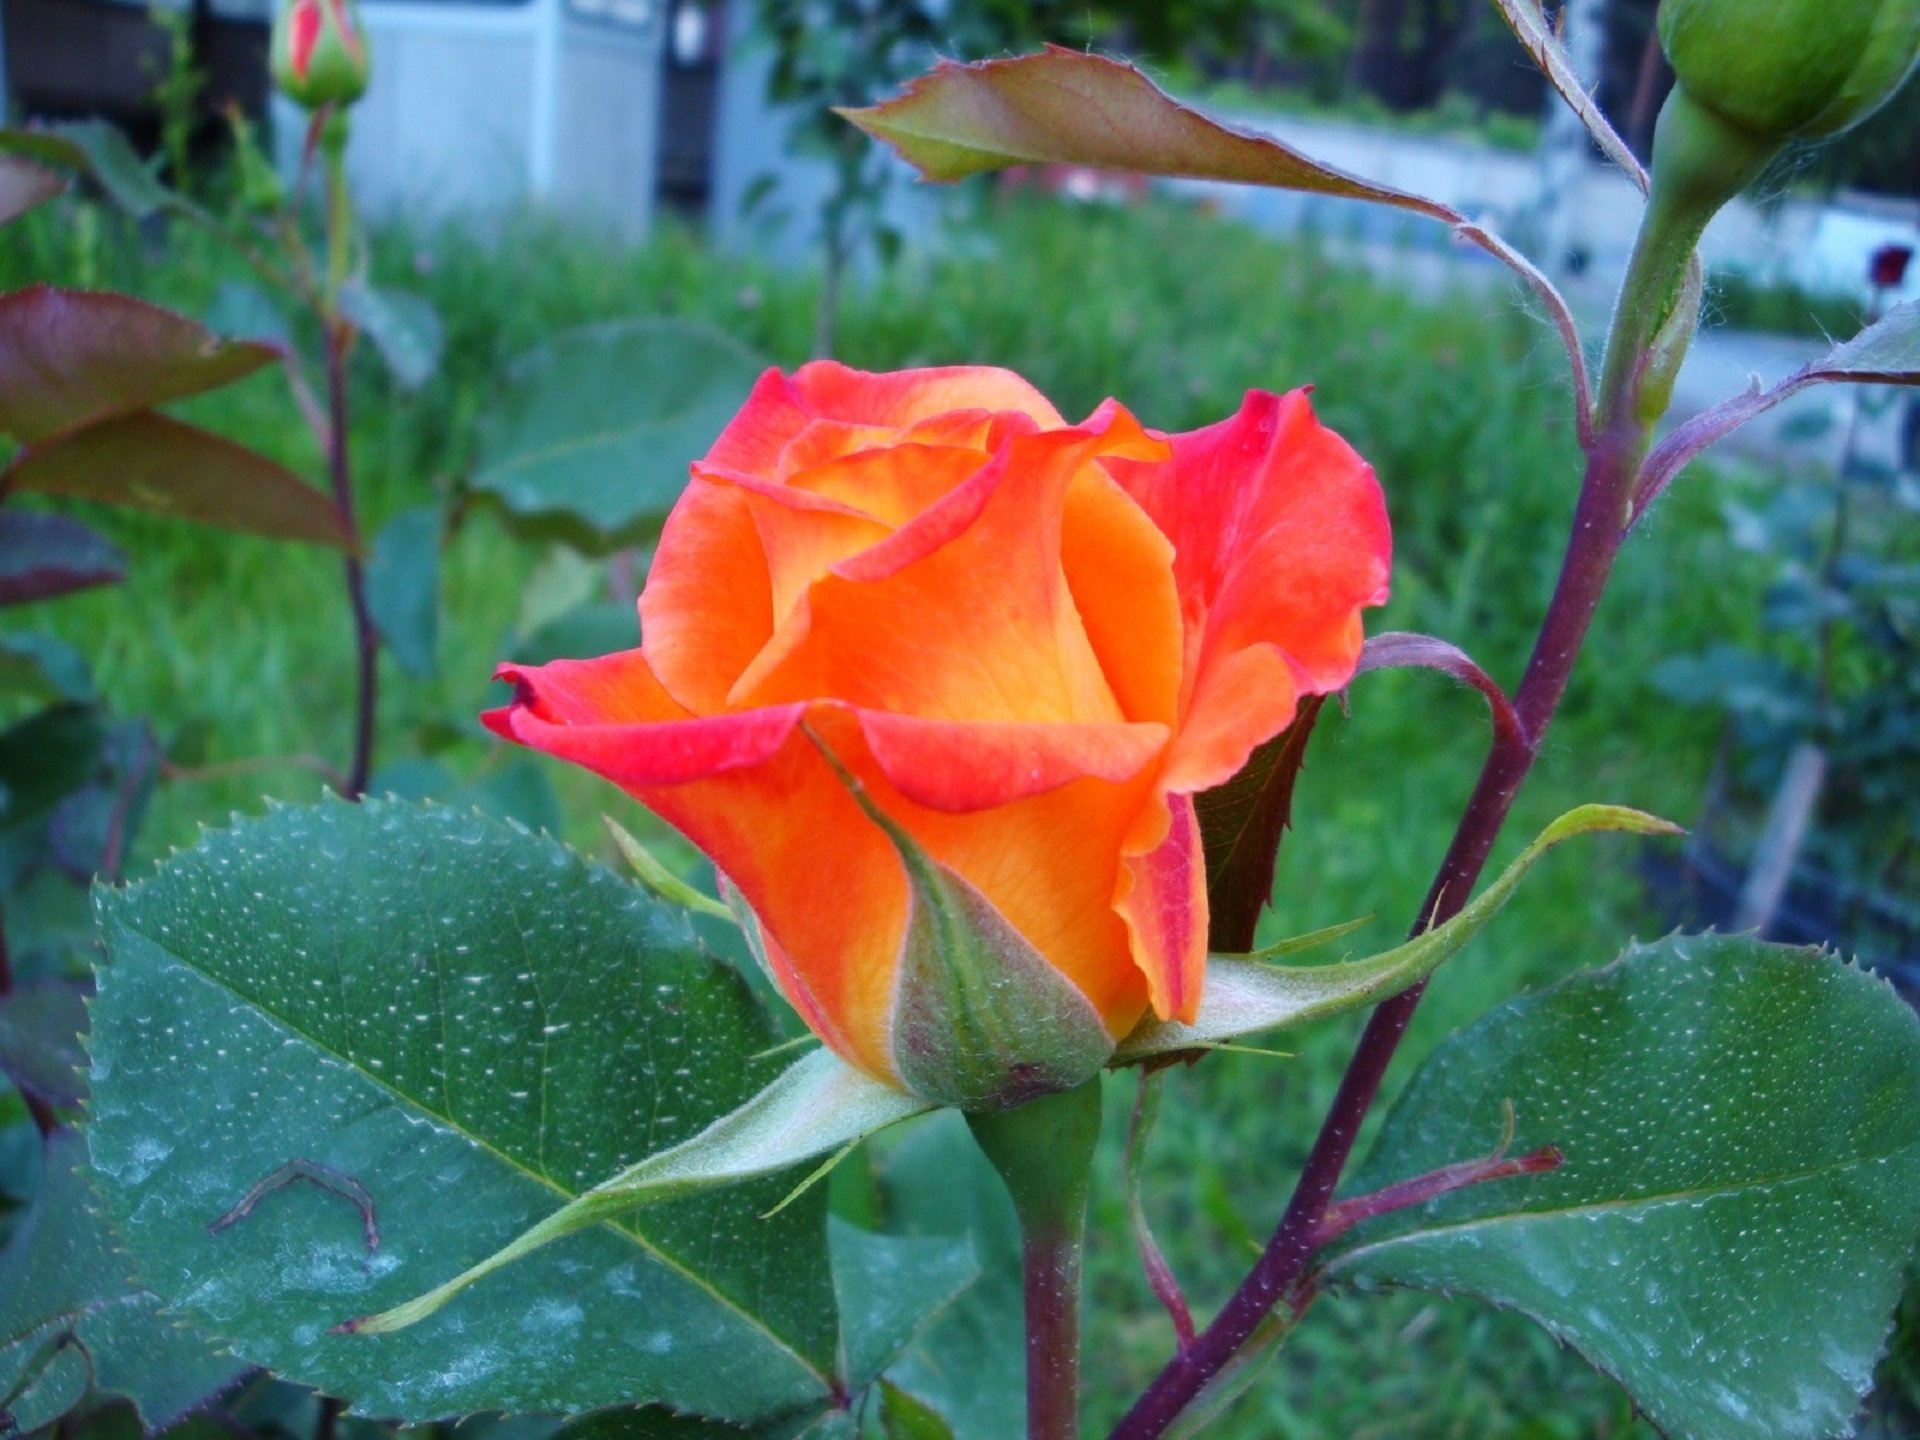 这是一朵美丽的玫瑰。